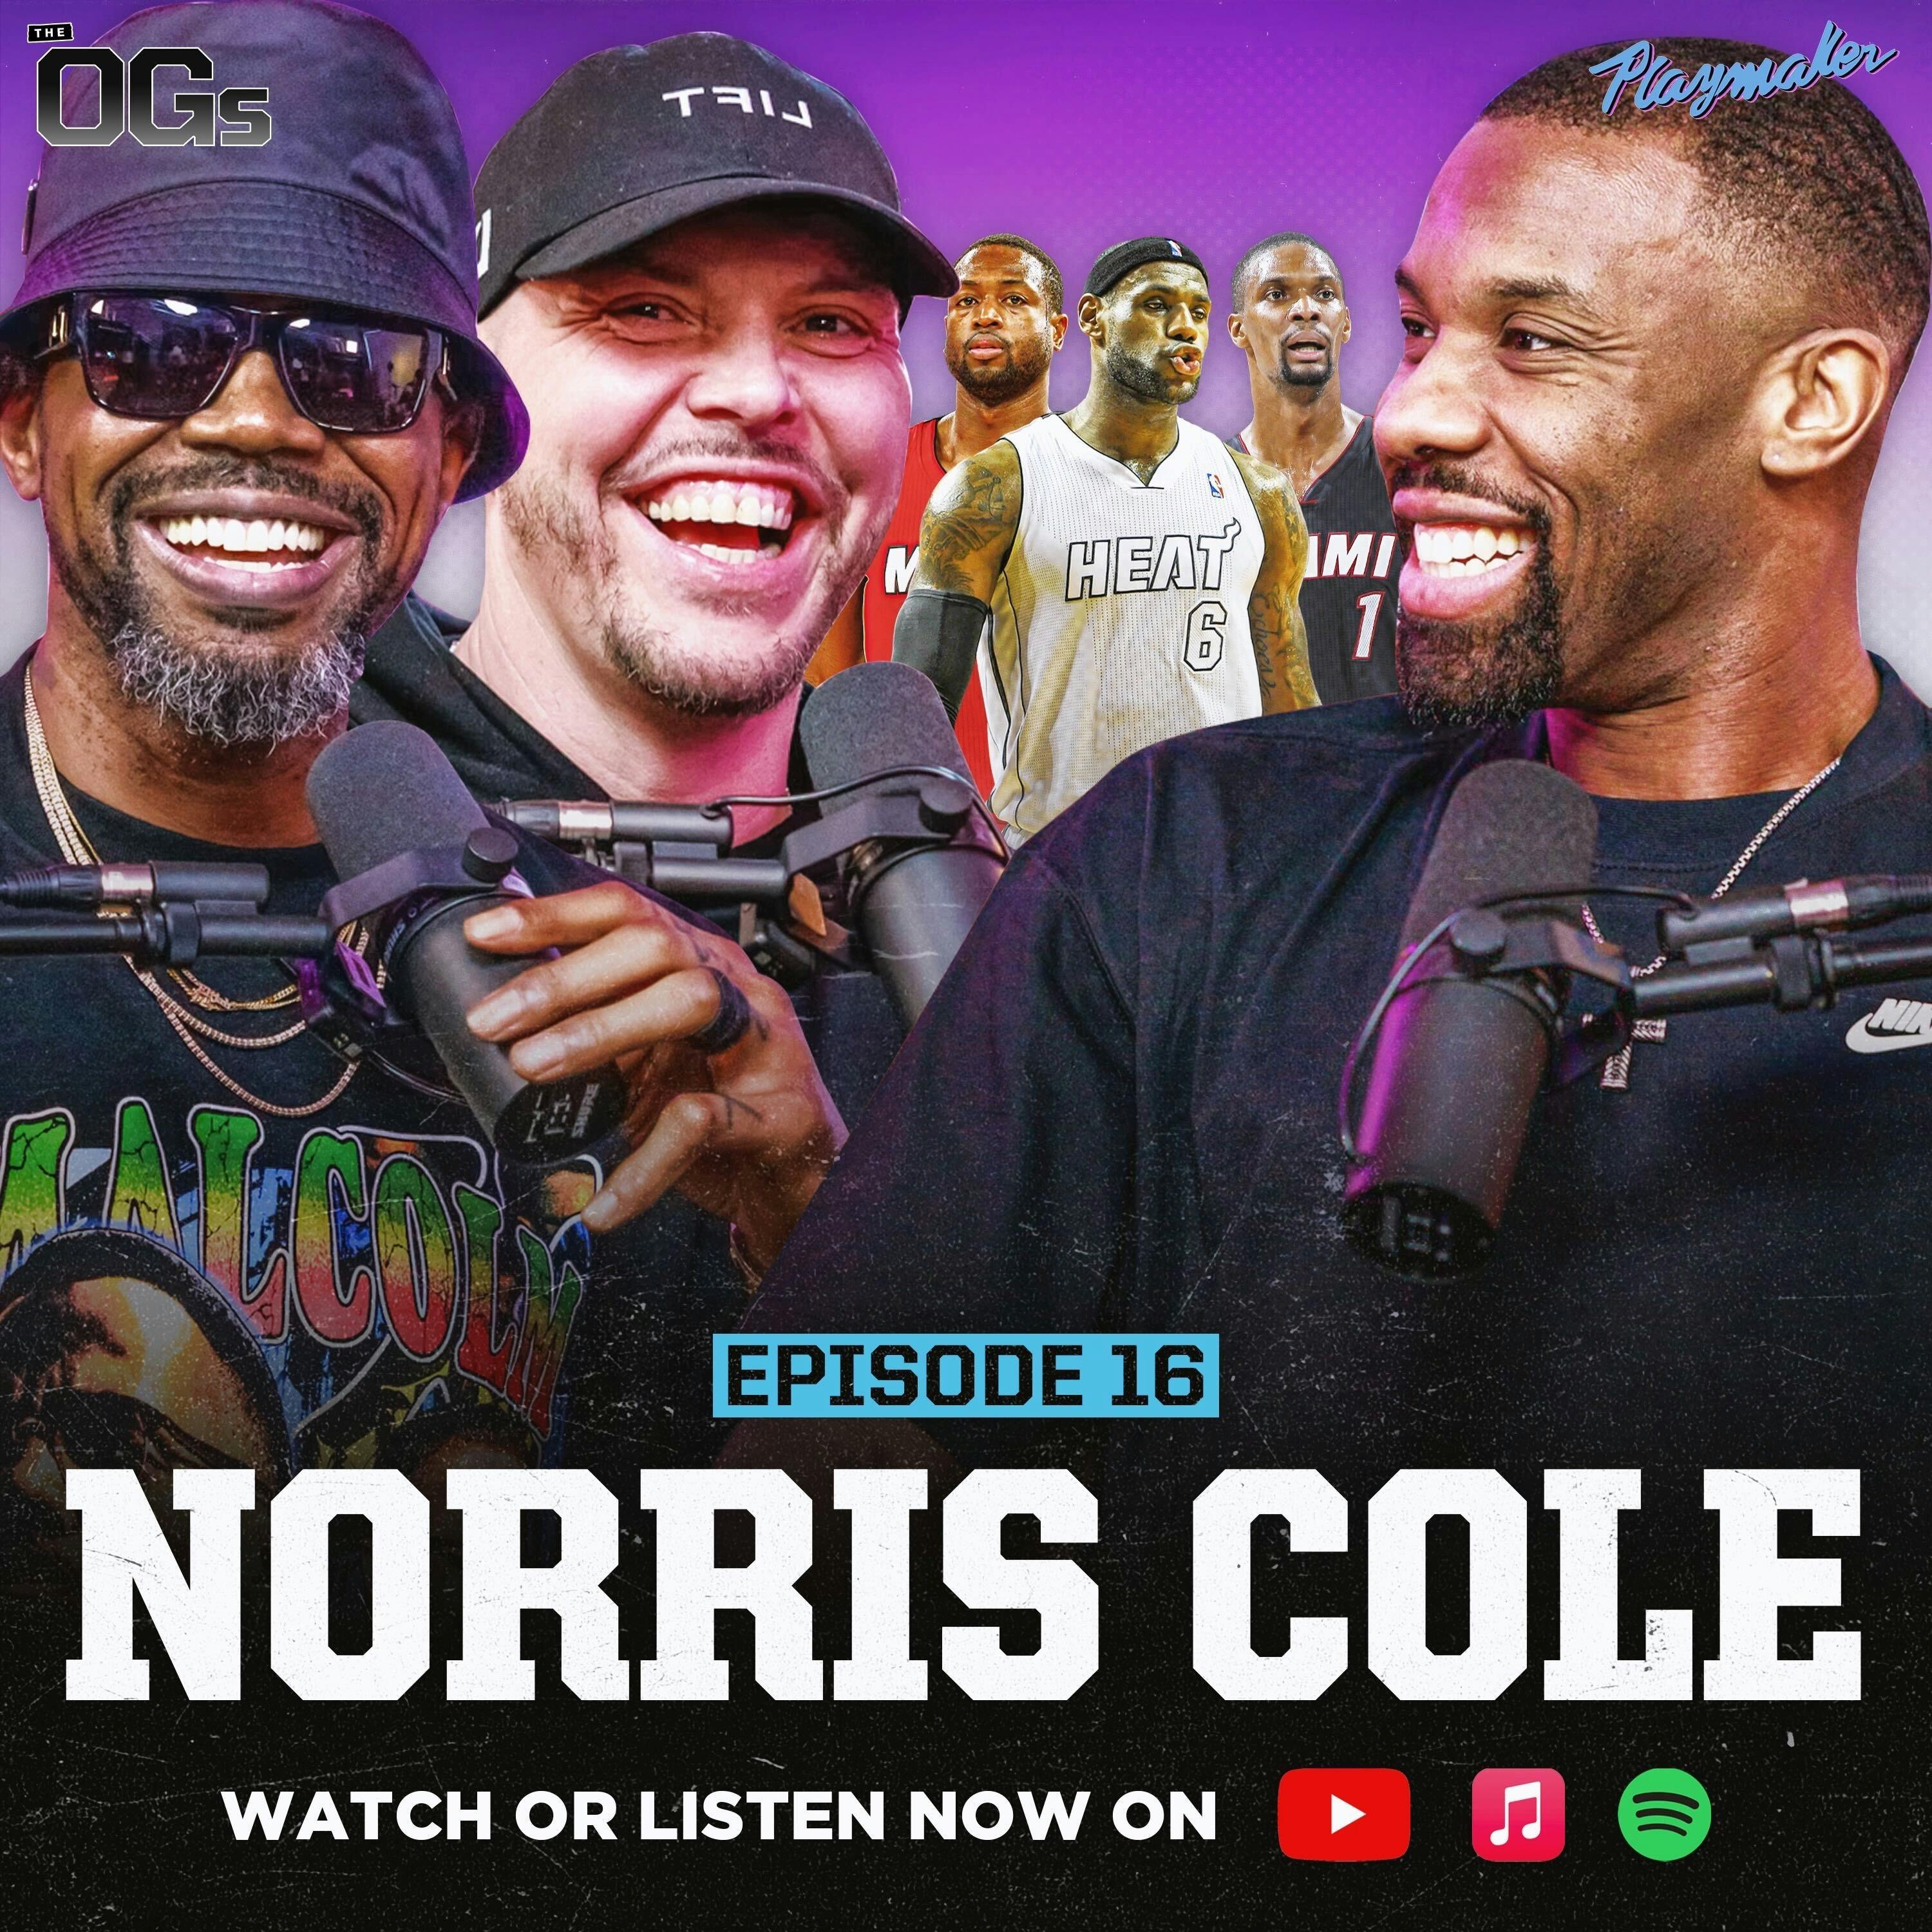 Norris Cole Reveals Heat Secrets, LeBron & Chris Bosh Stories & NBA Hot Takes | The OGs Ep. 16